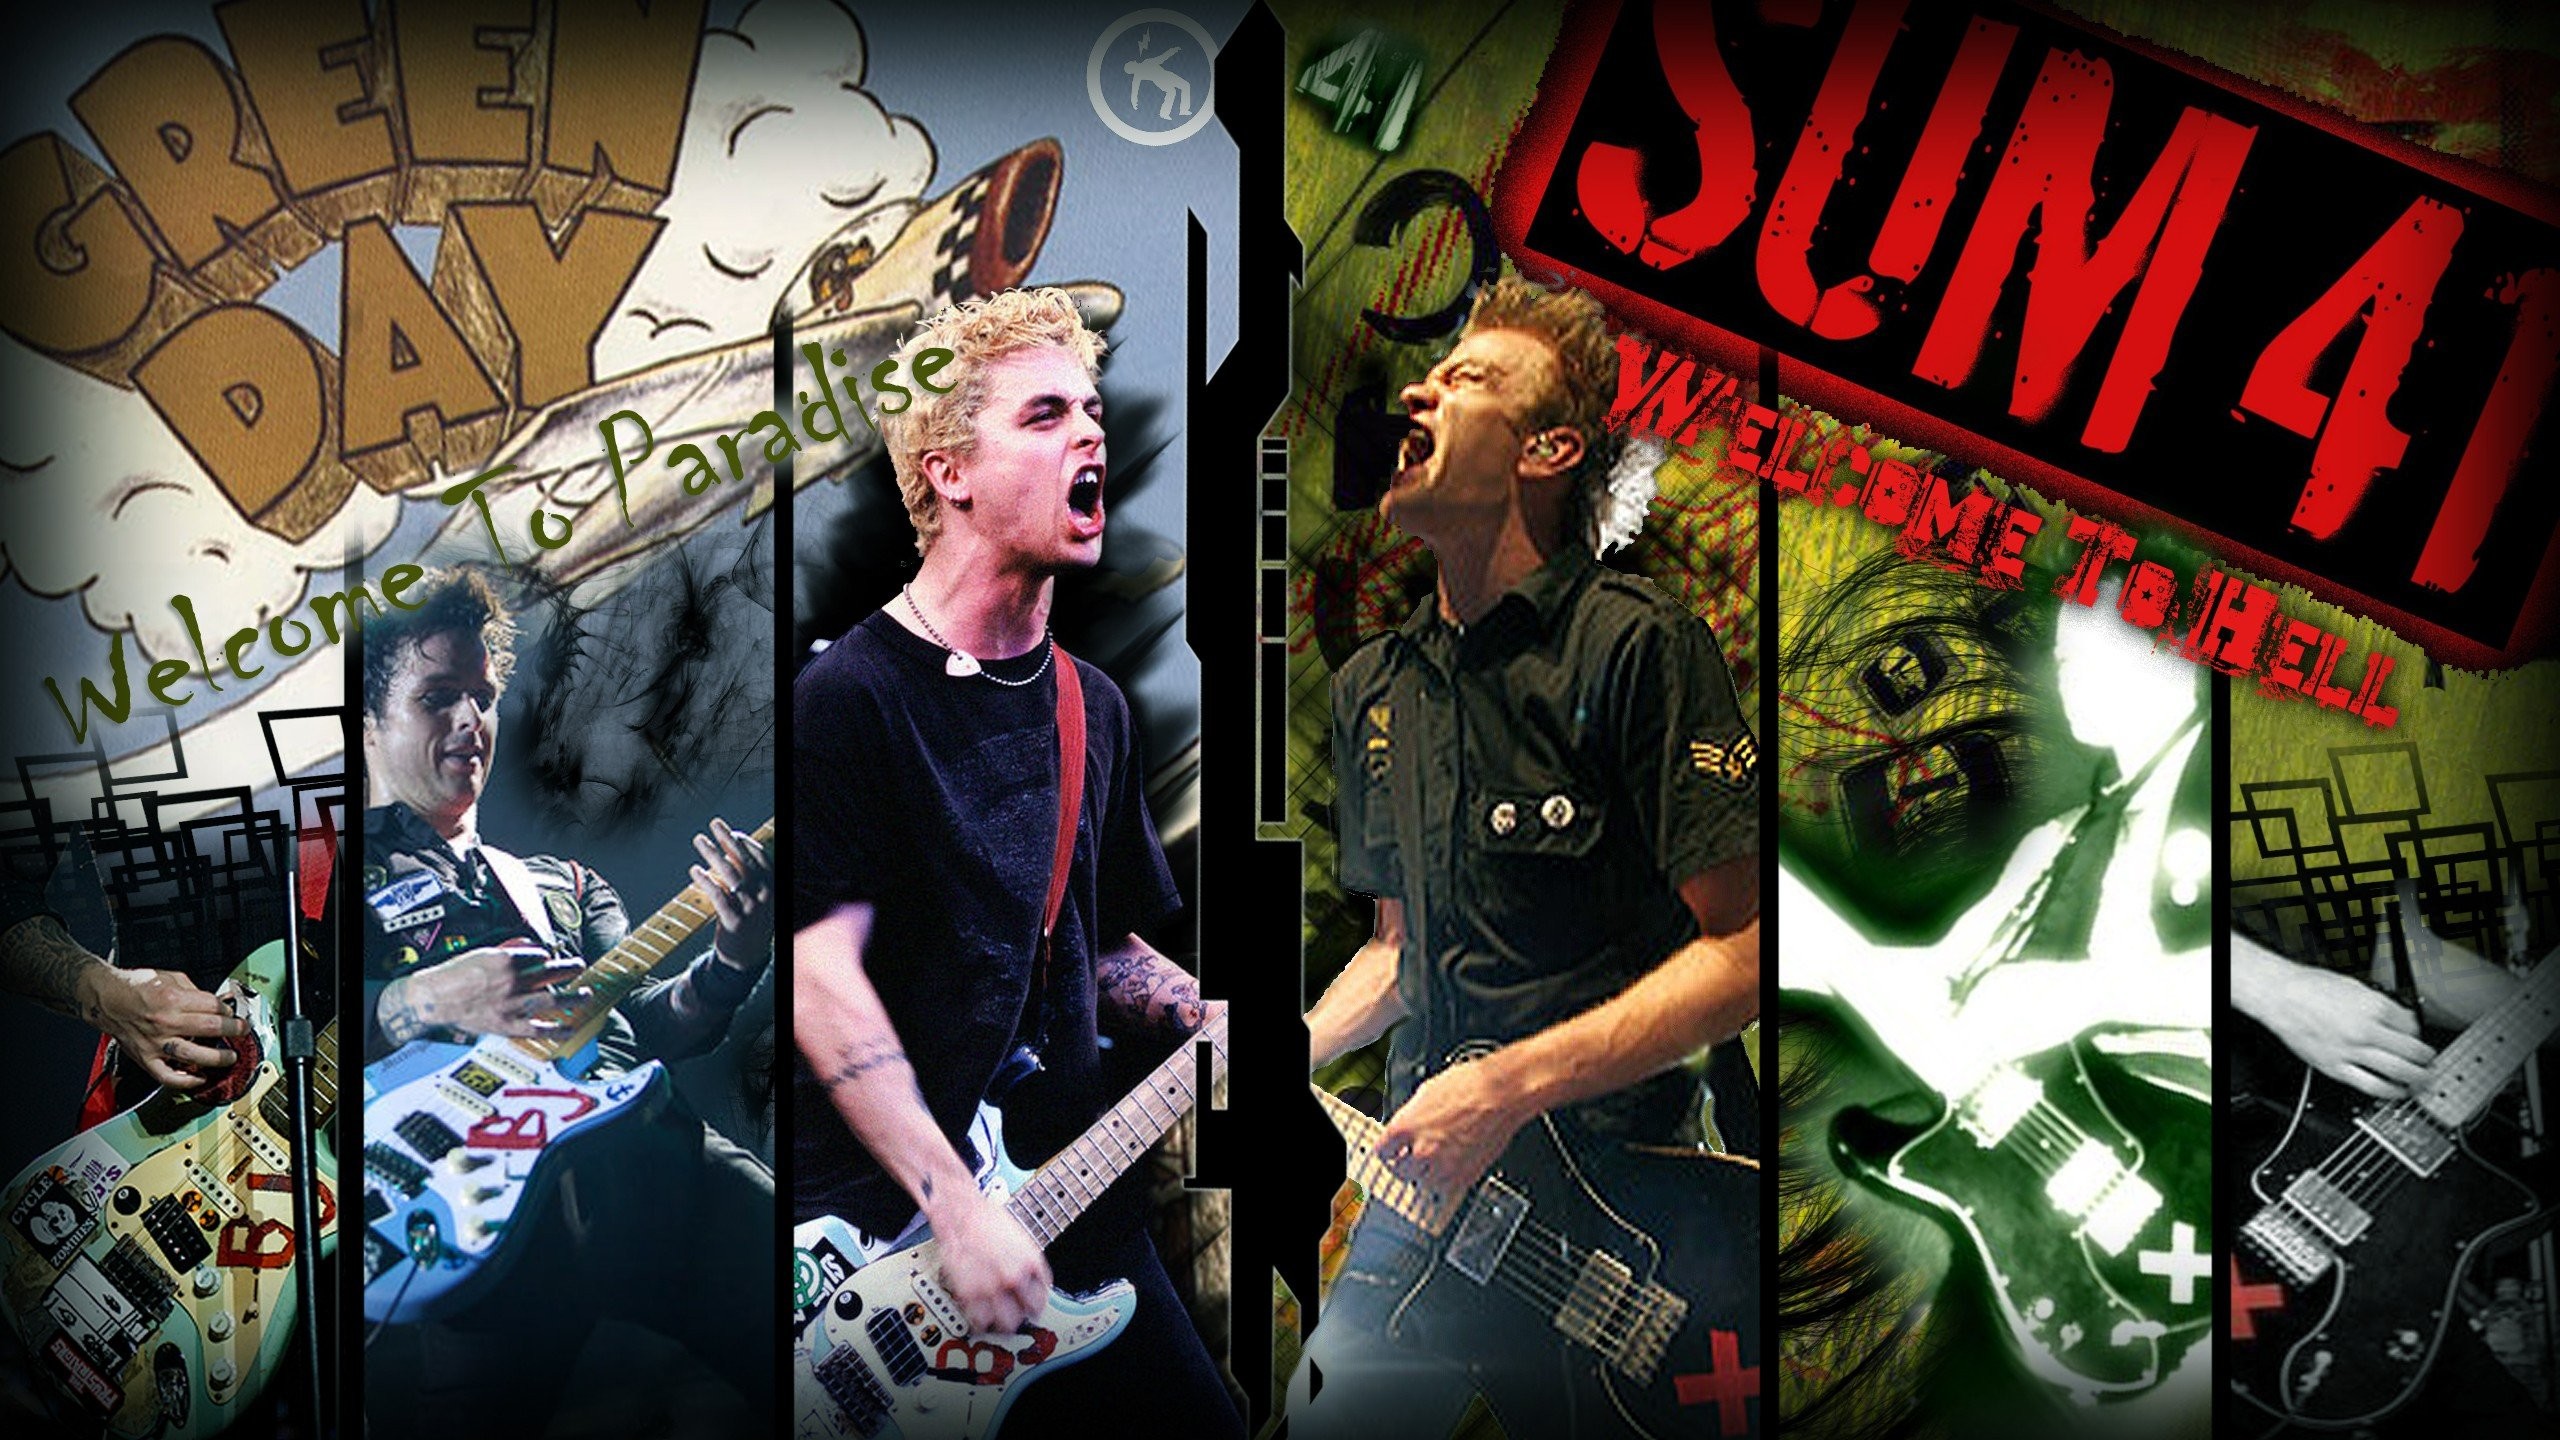 2560x1440 Green Day punk Billie Joe Armstrong Pop Punk sum 41 punk rock Deryck  Whibley wallpaper |  | 335226 | WallpaperUP